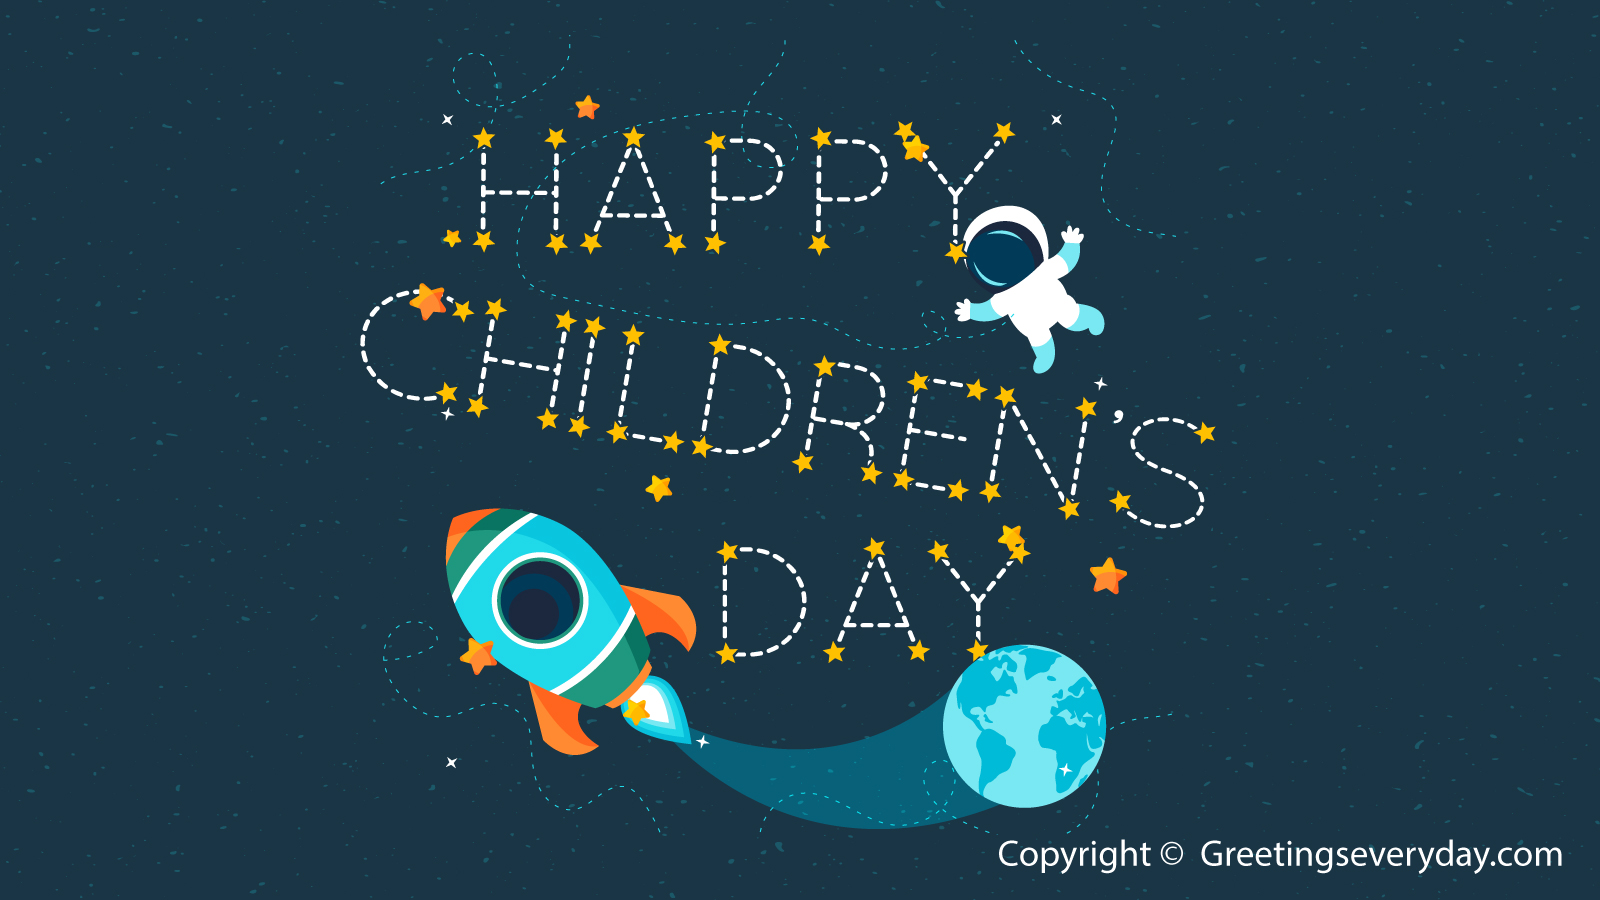 Children Day Image